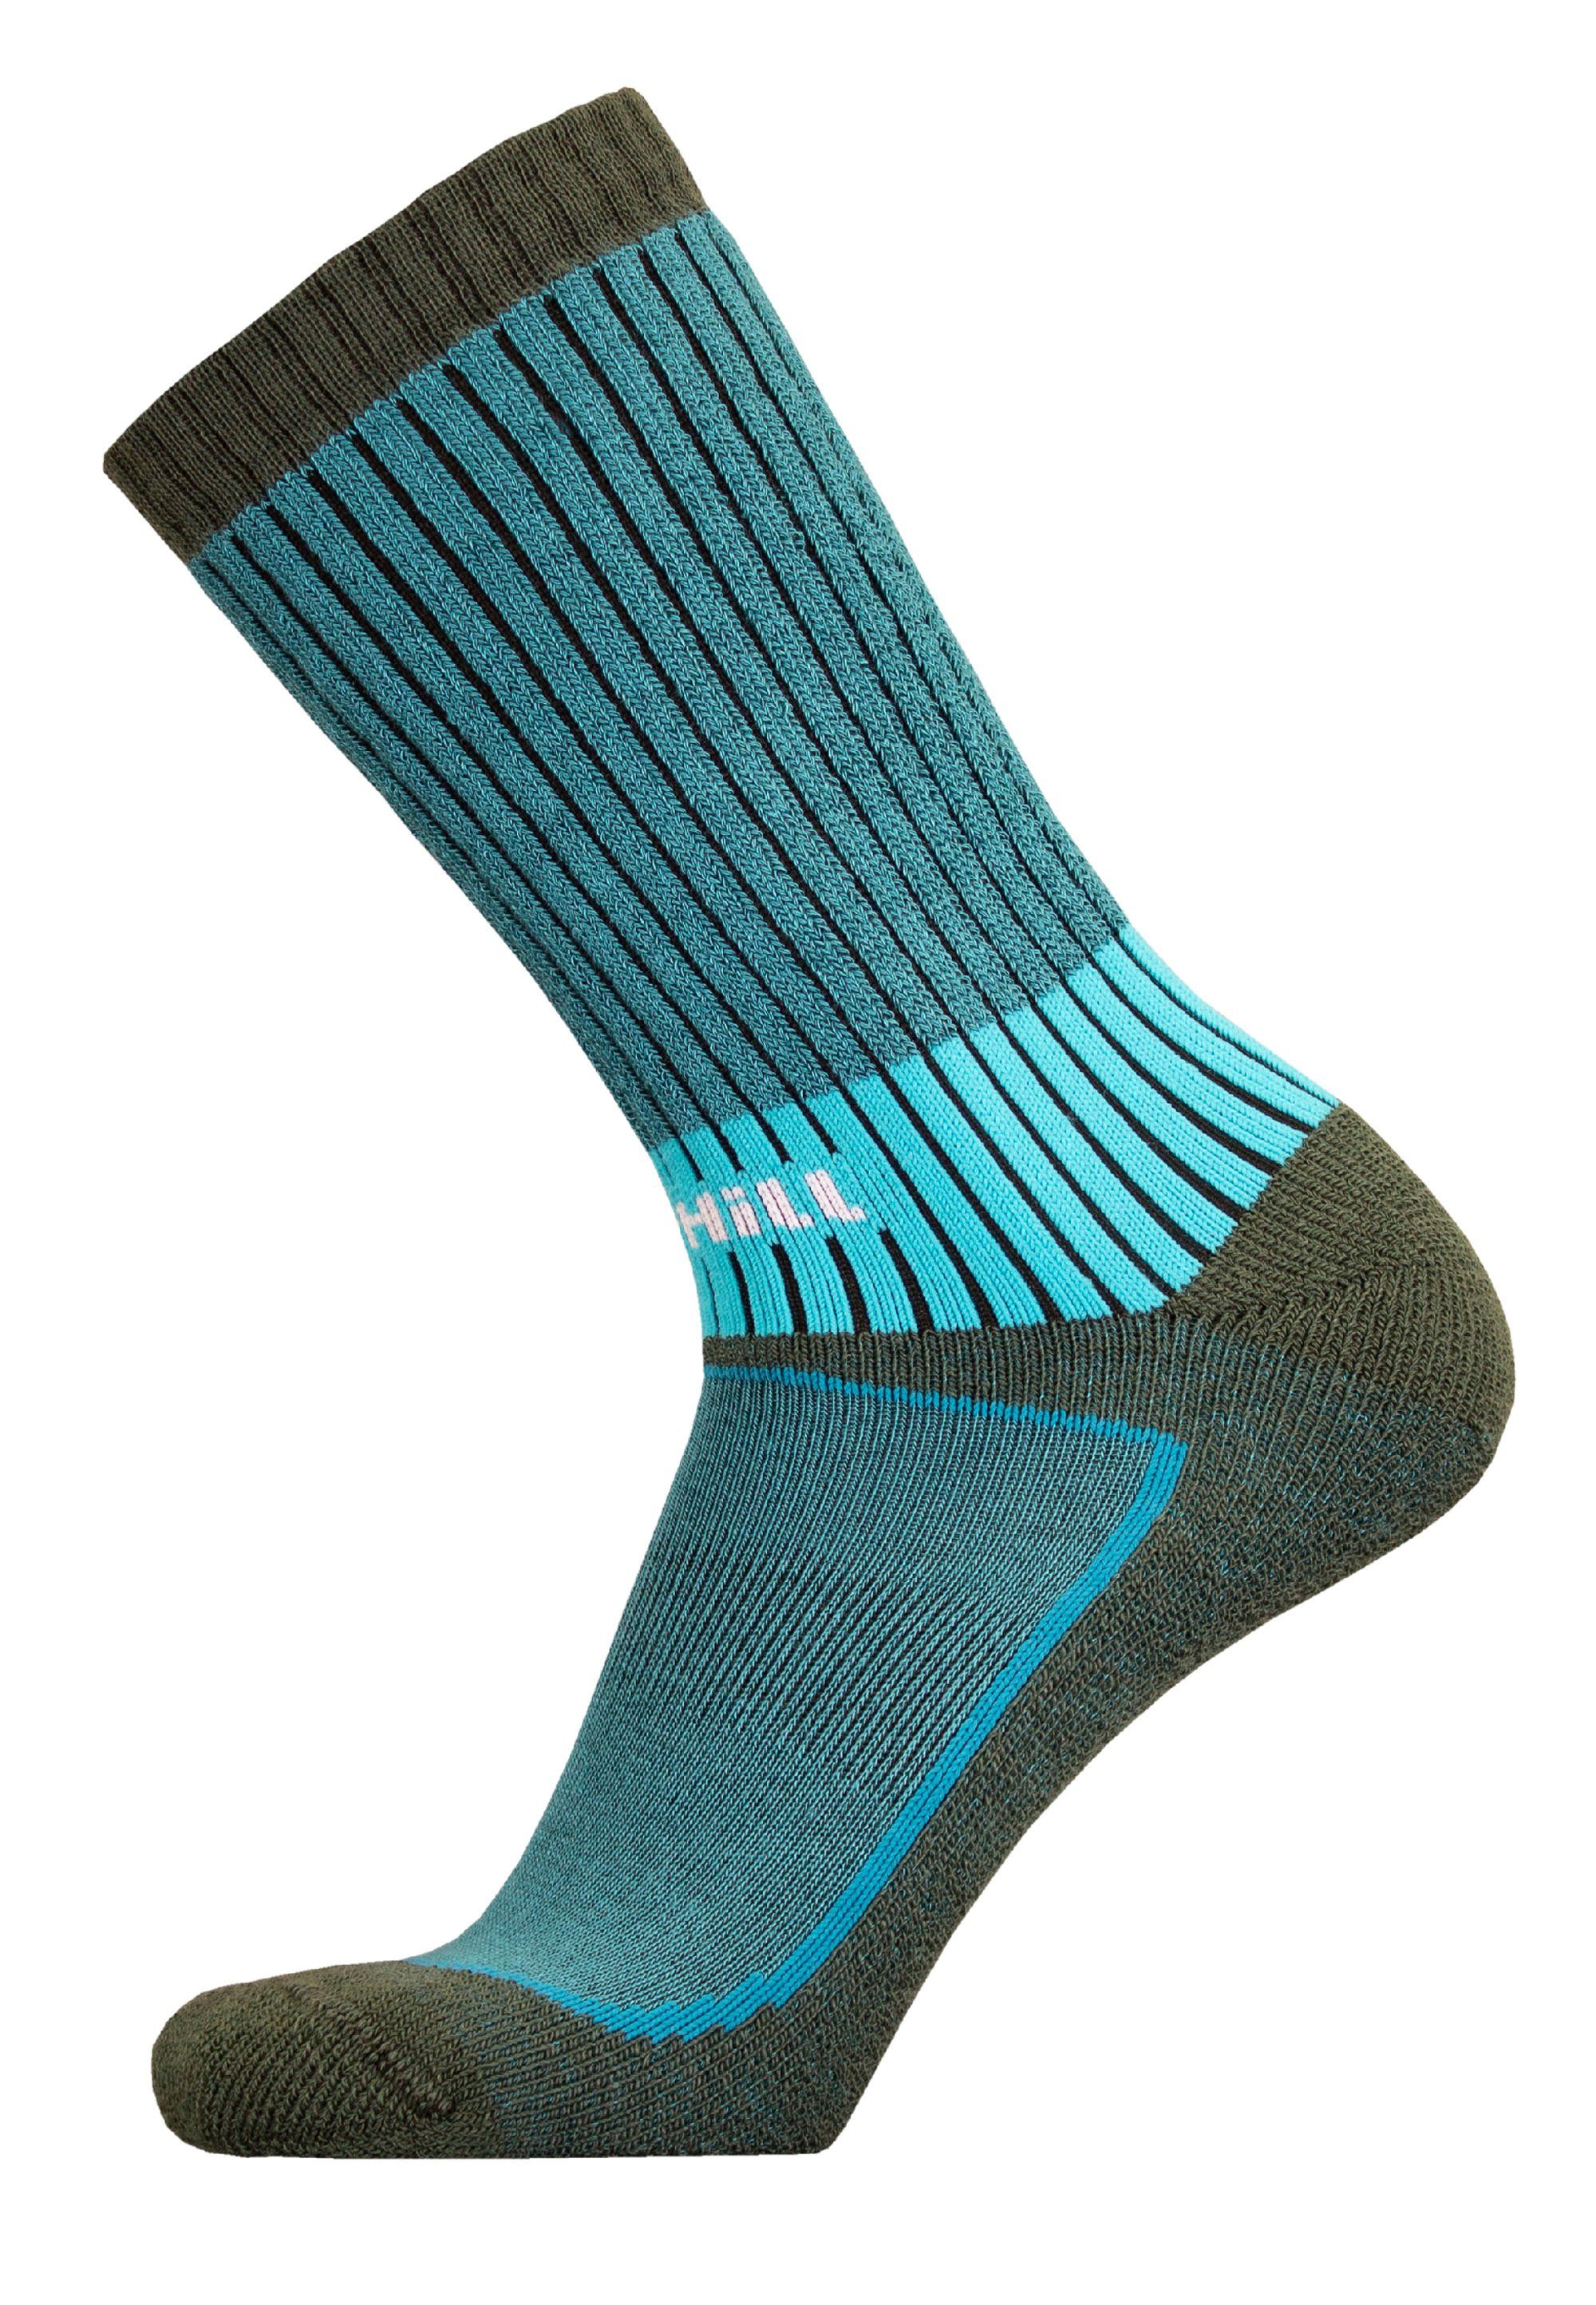 UphillSport Socken VAARU mit (1-Paar) grau-grün 4-Lagen-Struktur